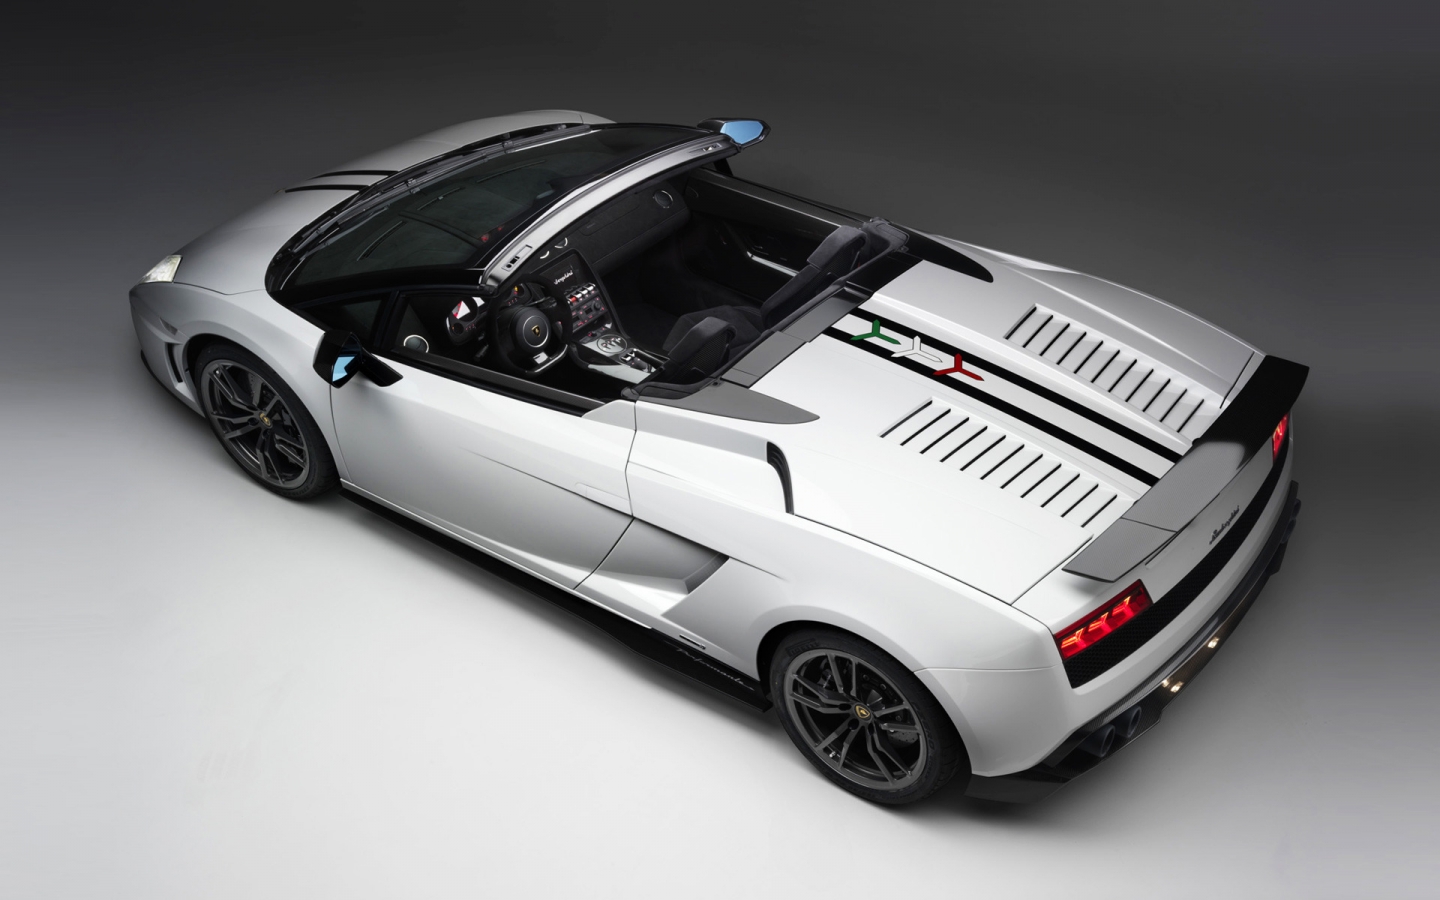 2011 Lamborghini Gallardo for 1440 x 900 widescreen resolution